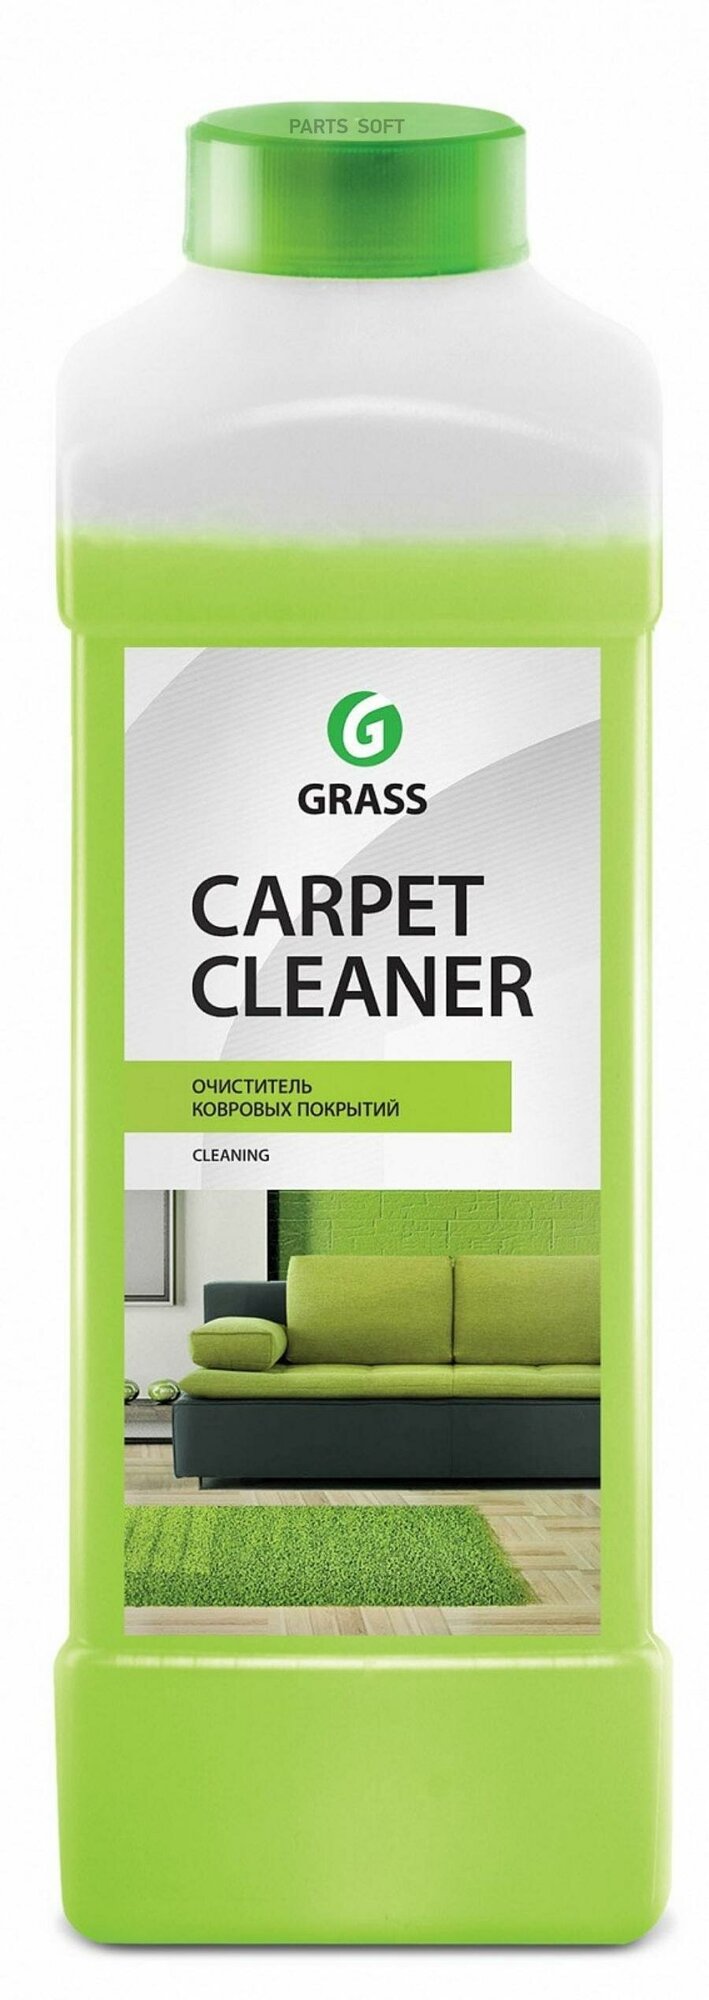 Пятновыводитель Grass Carpet Cleaner 1 л - фото №1